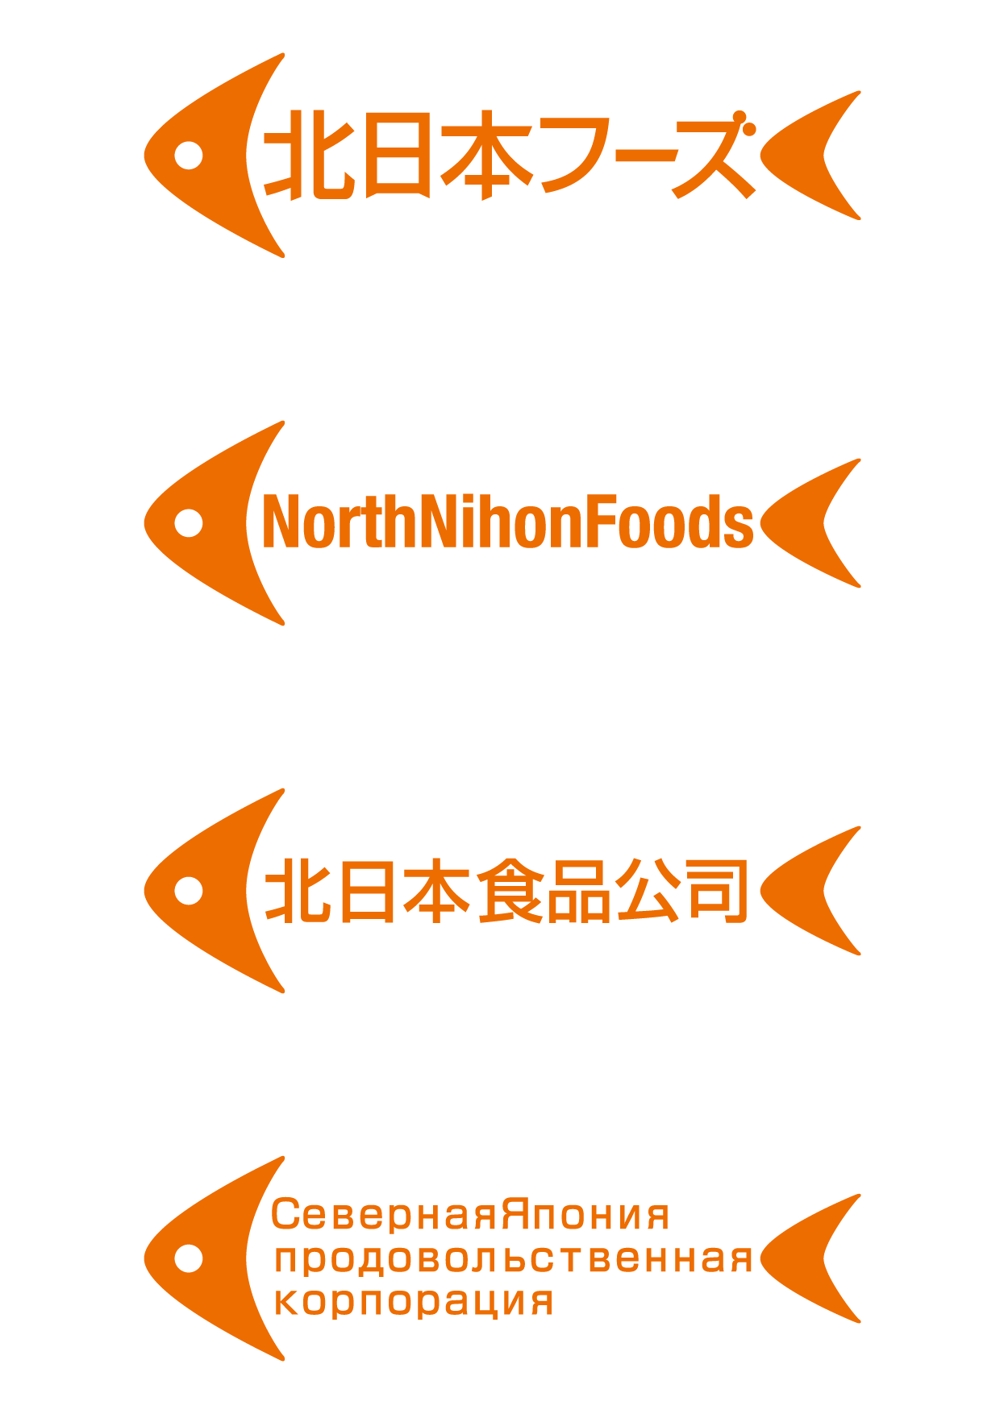 食品会社のロゴ作成